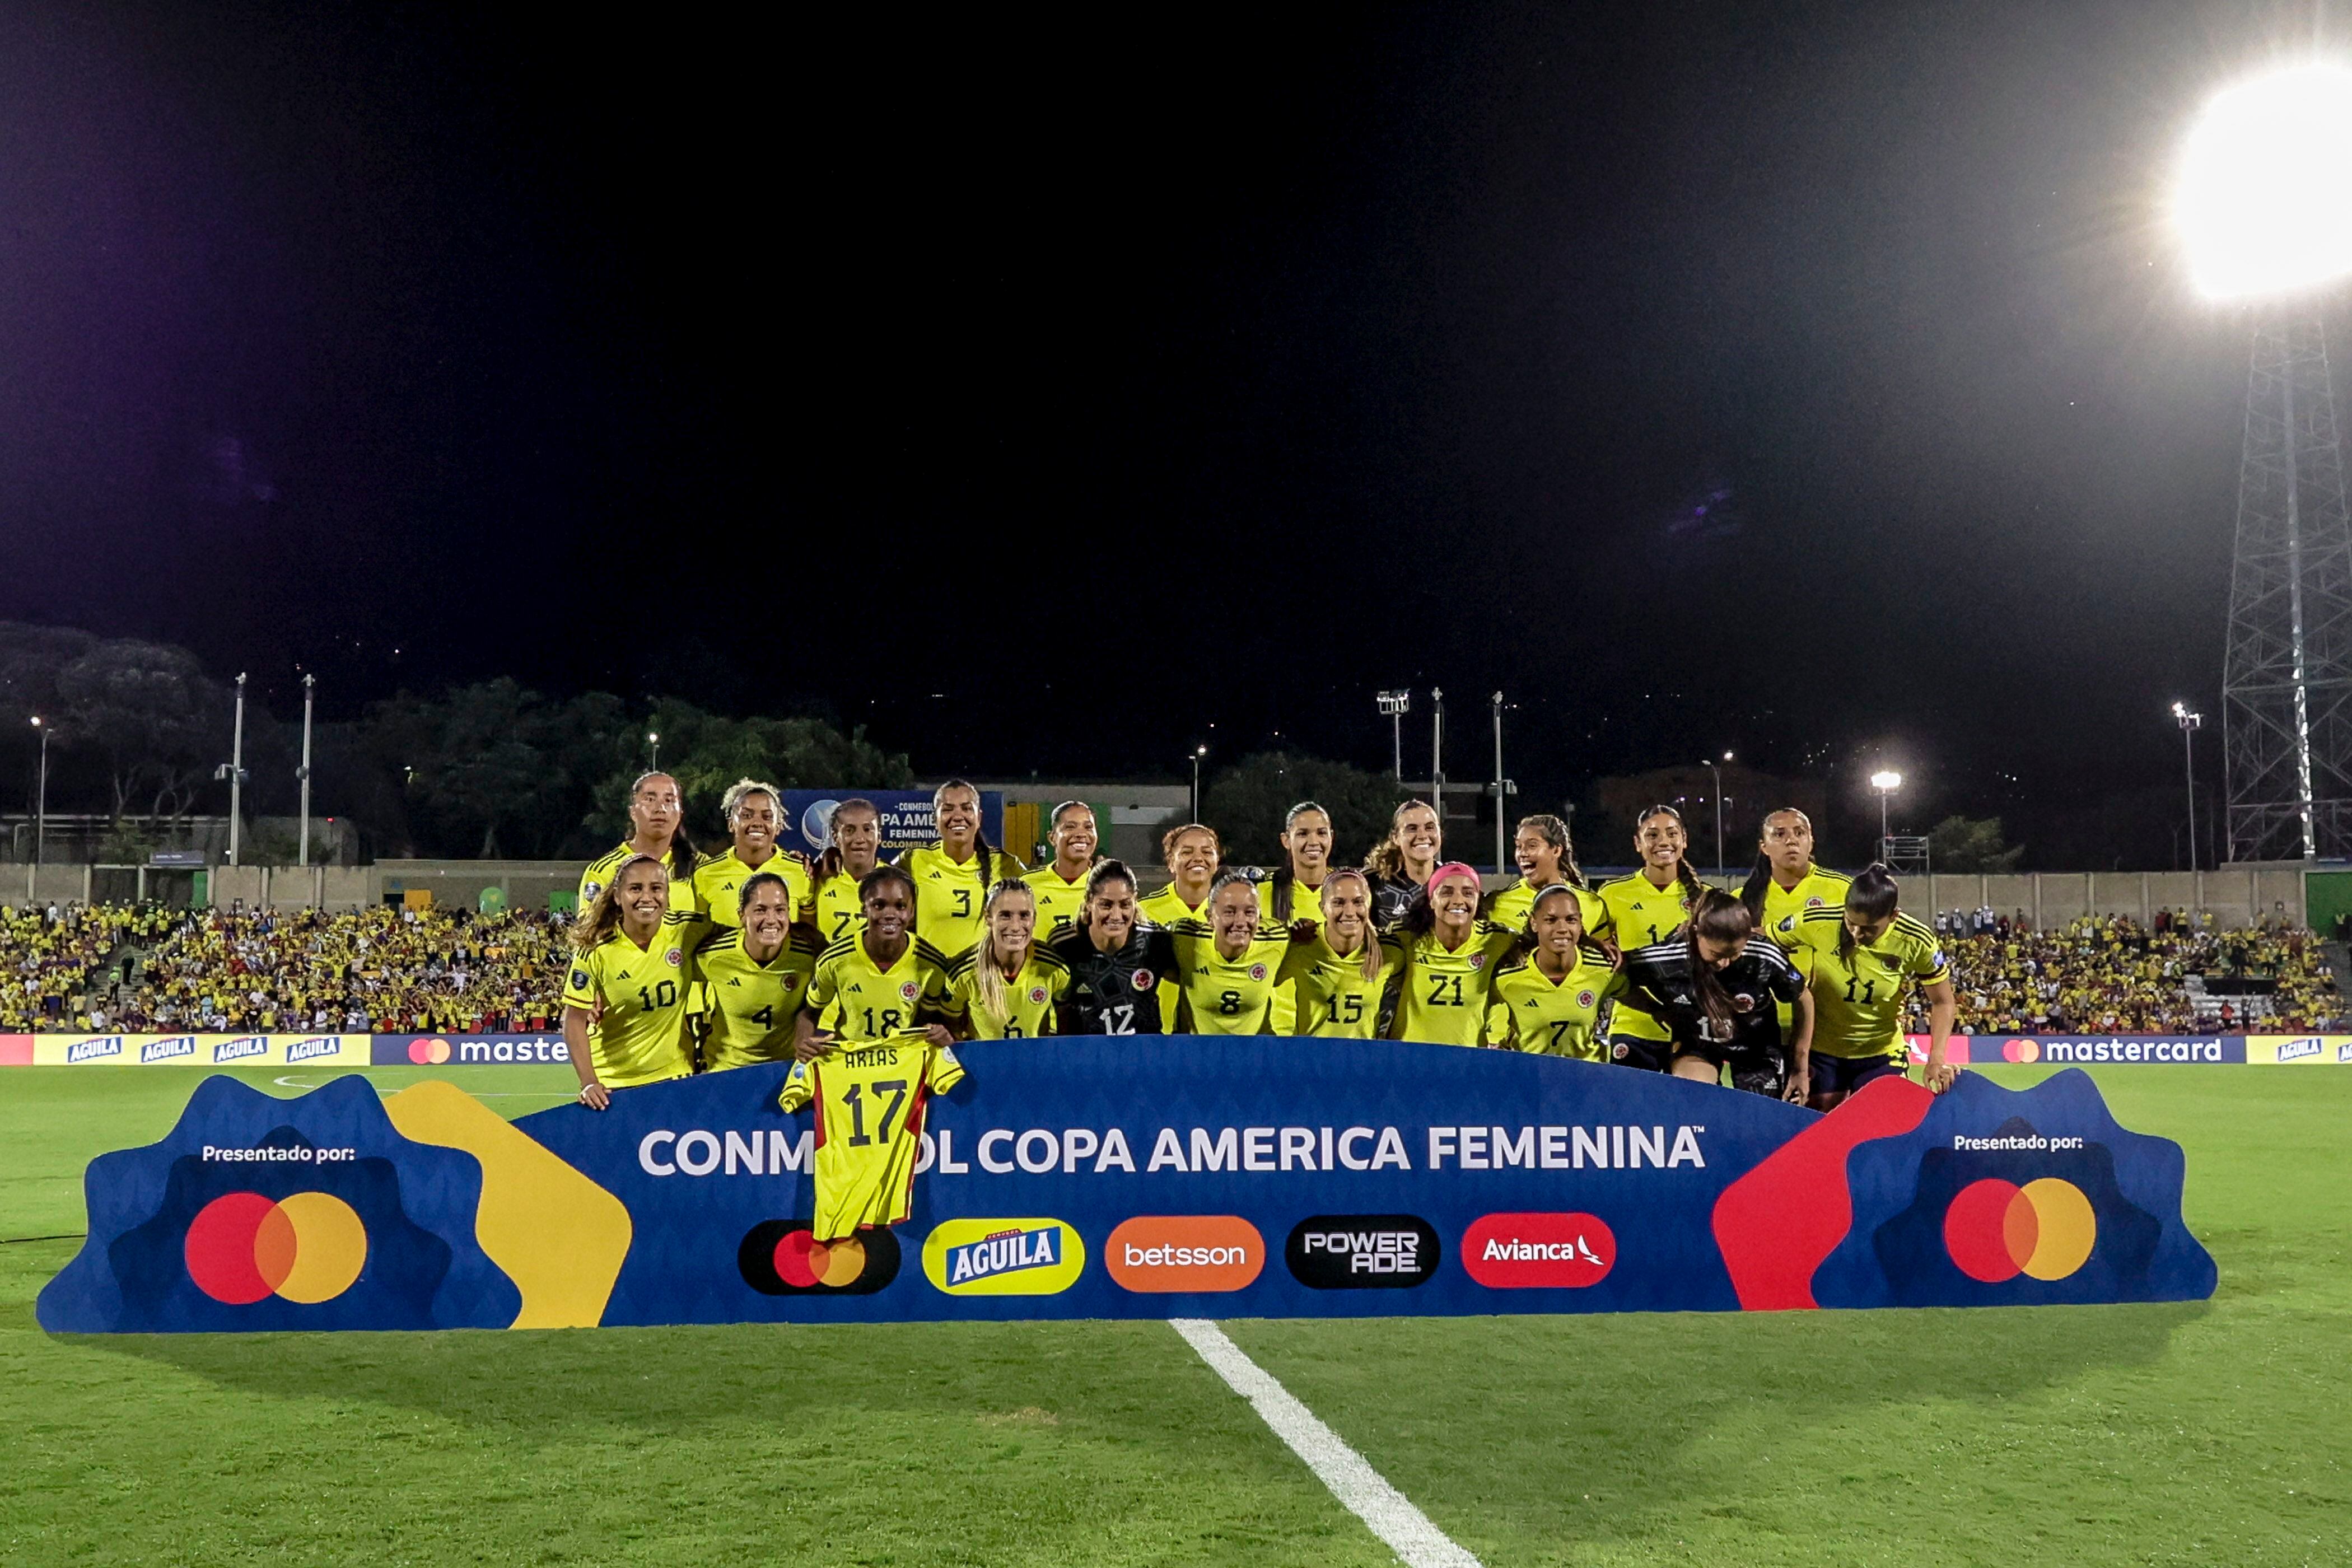 Esta es la nueva posición de Colombia en el ranking FIFA tras el subtítulo en la Copa América Femenina